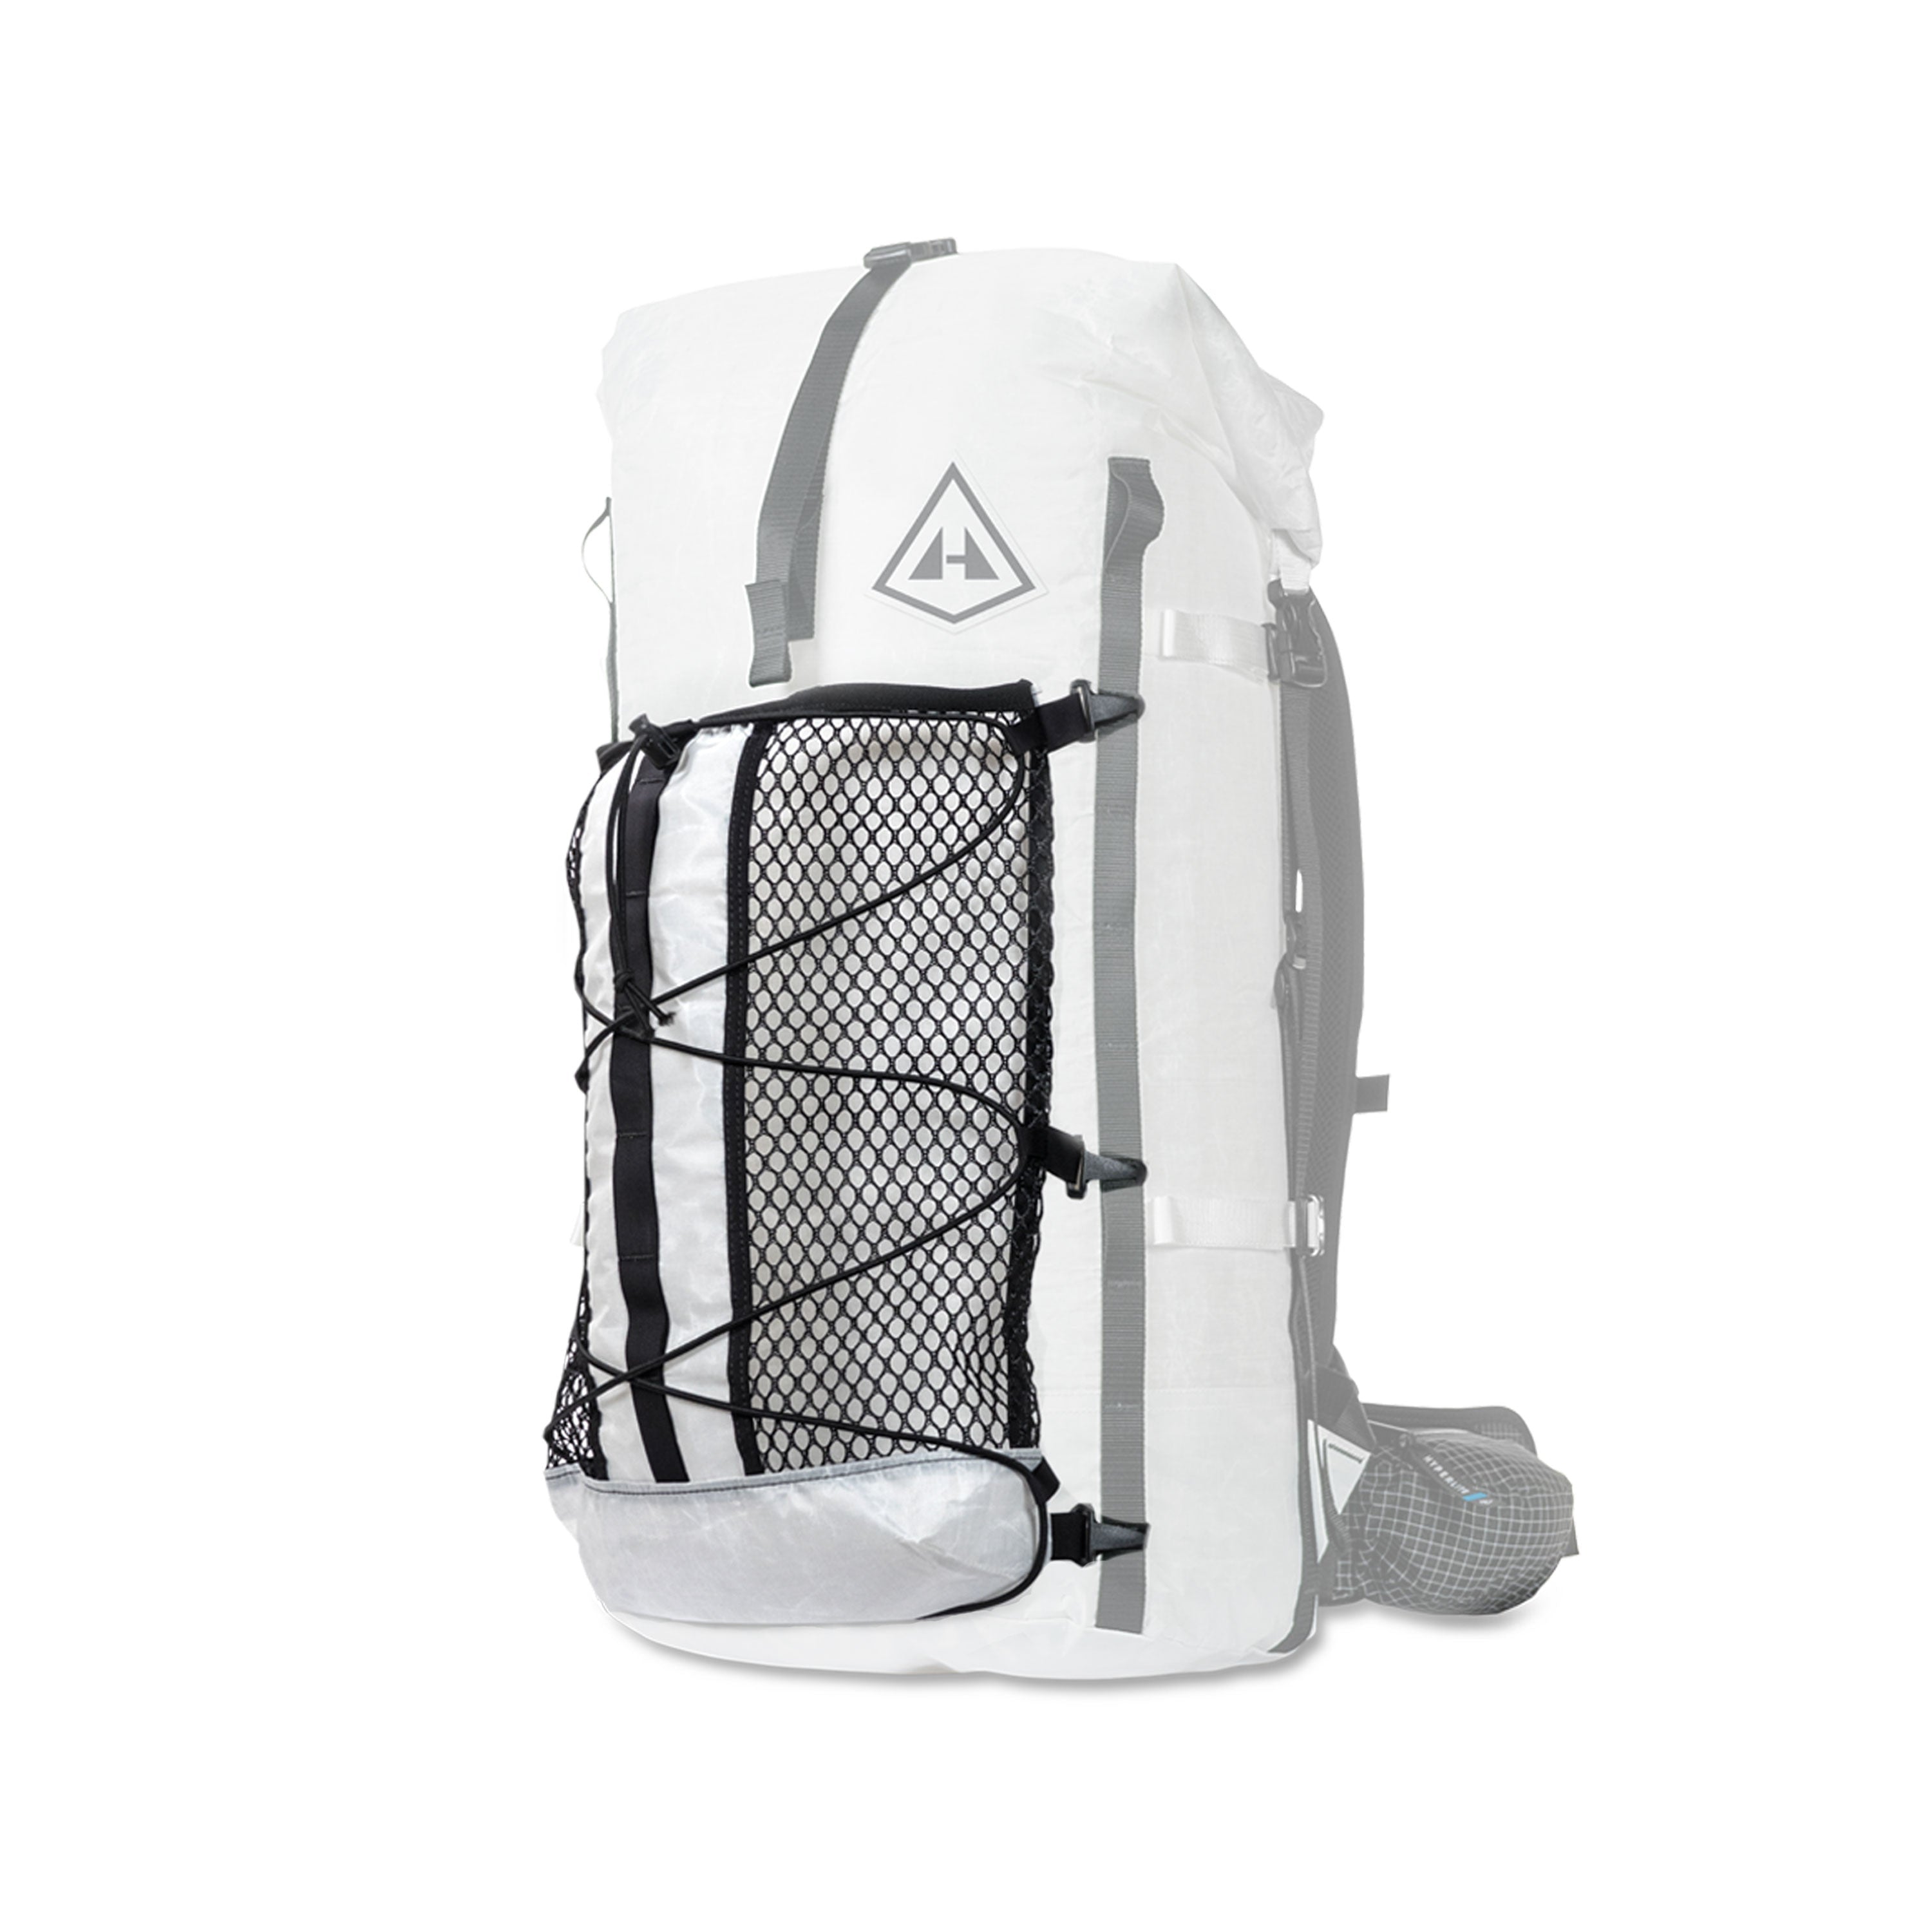 Adding mesh pocket to backpack? : r/myog